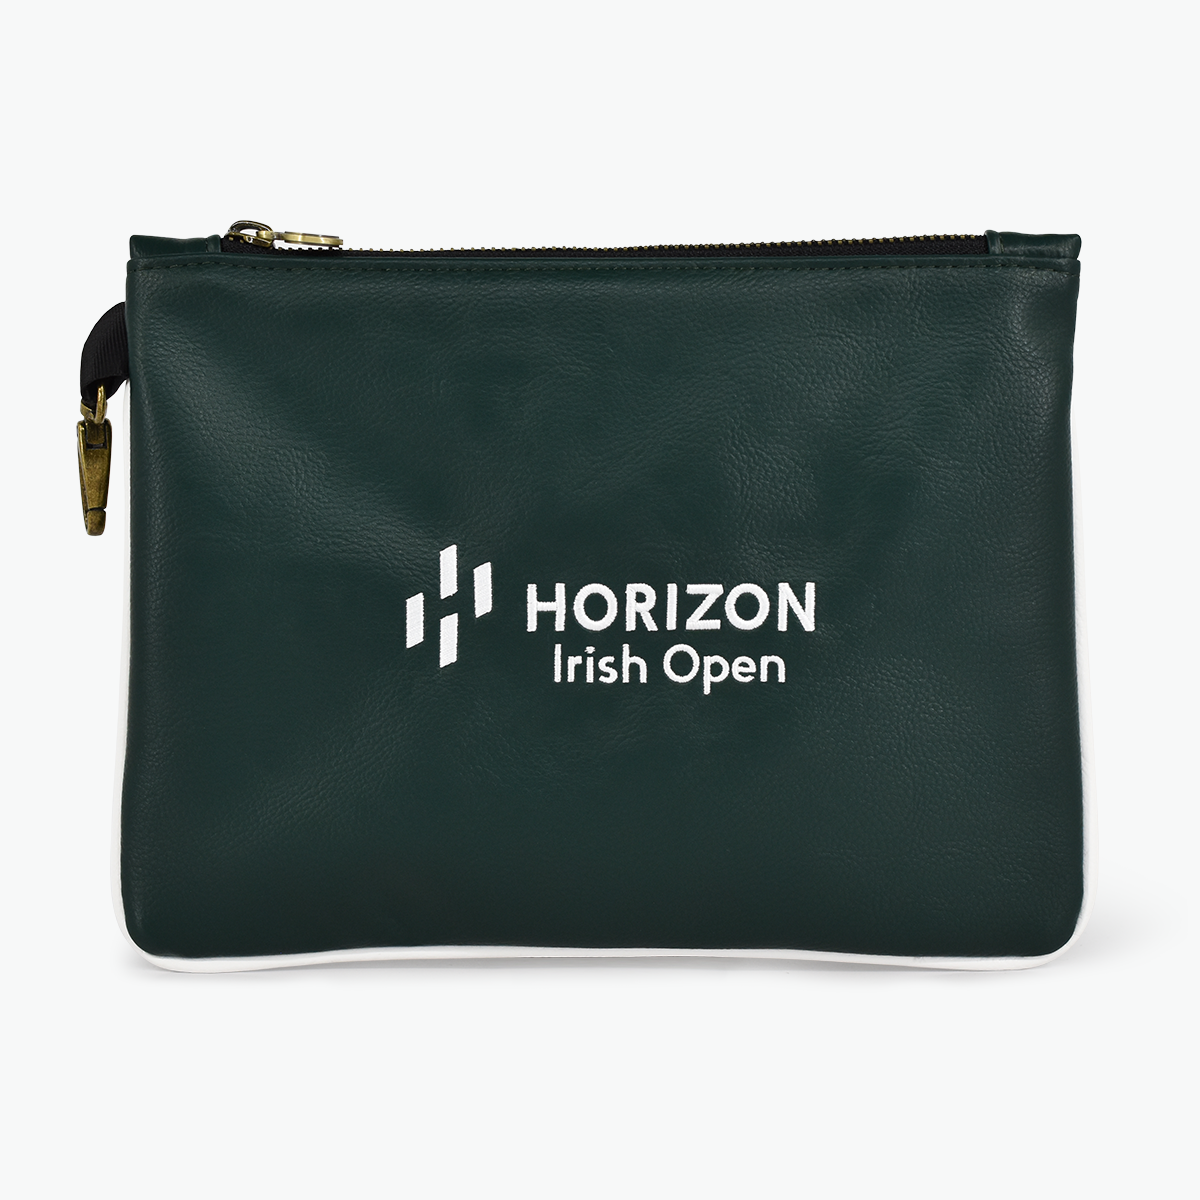 Horizon Irish Open Valuables Zip Bag - Green - Front